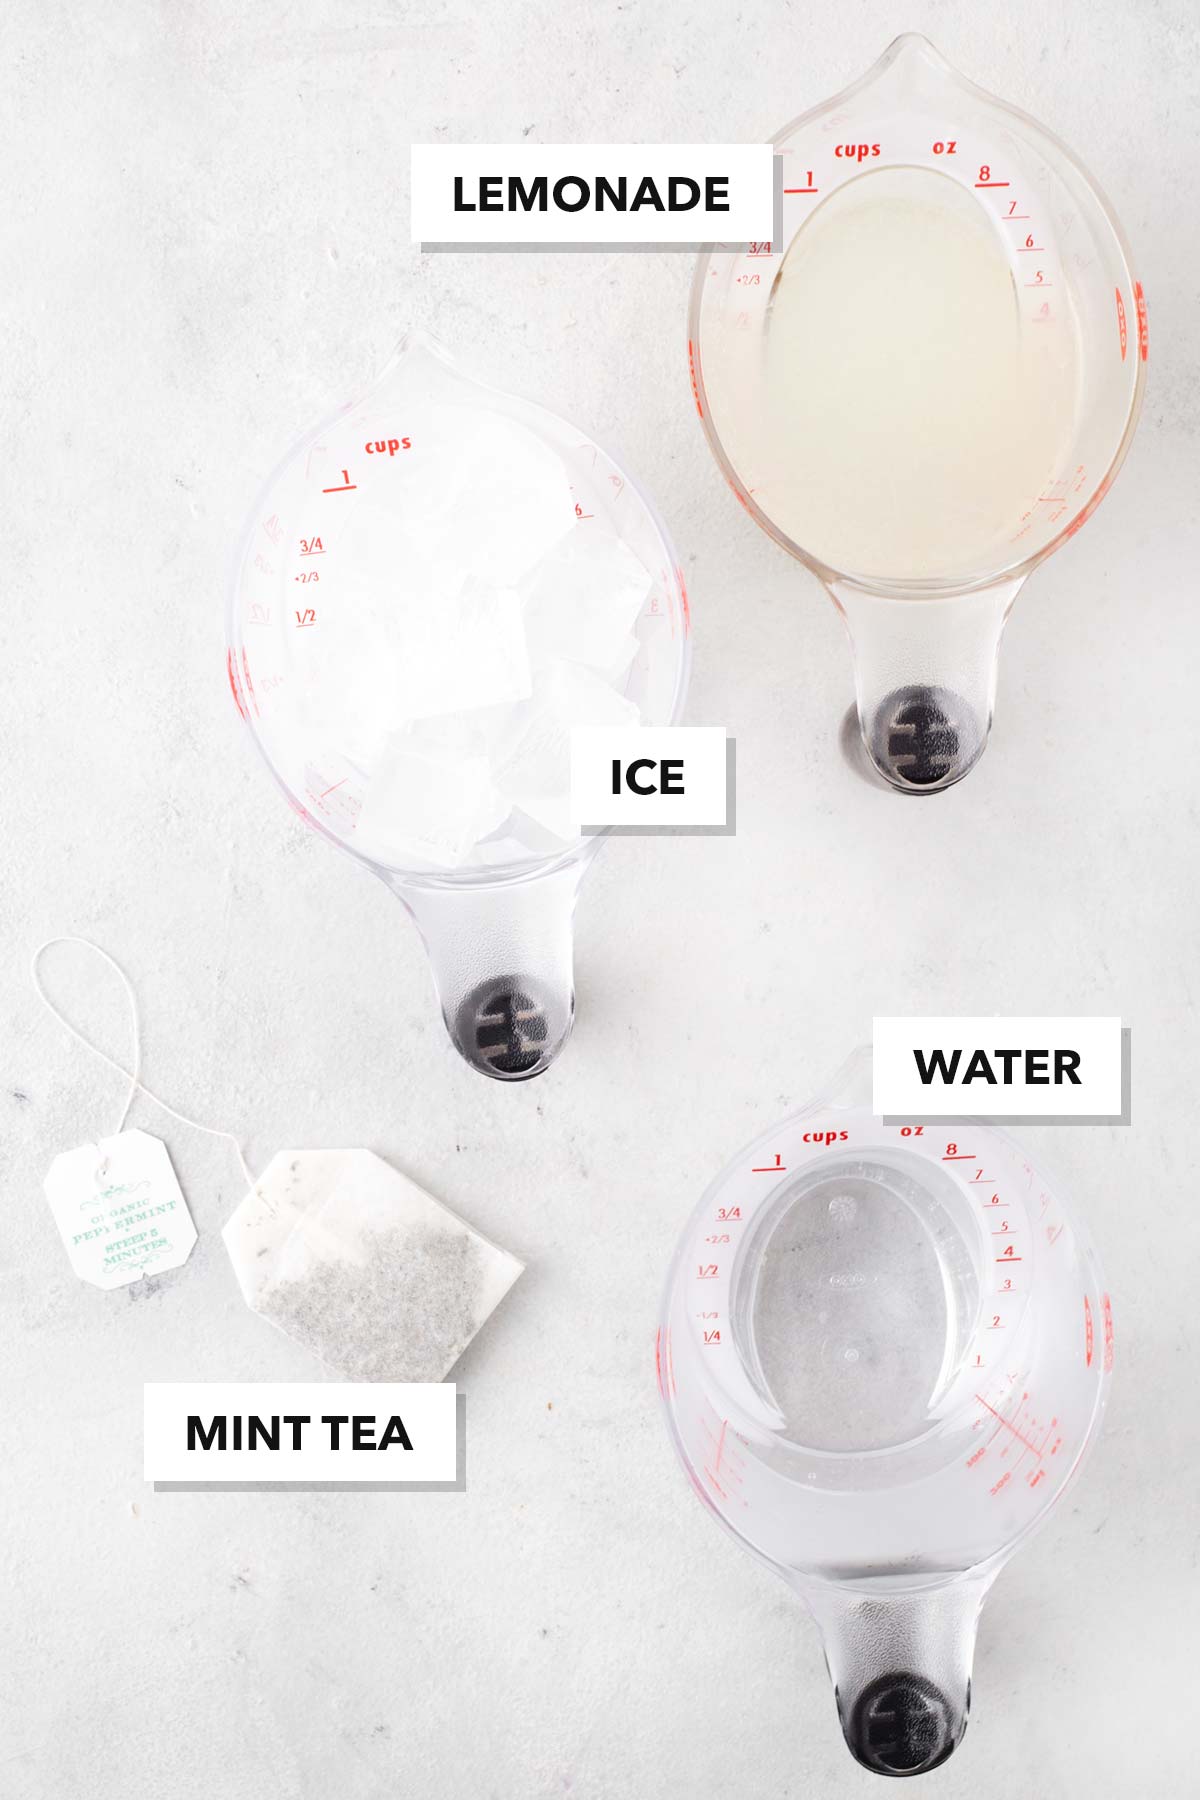 Mint Lemonade ingredients measured in cups.